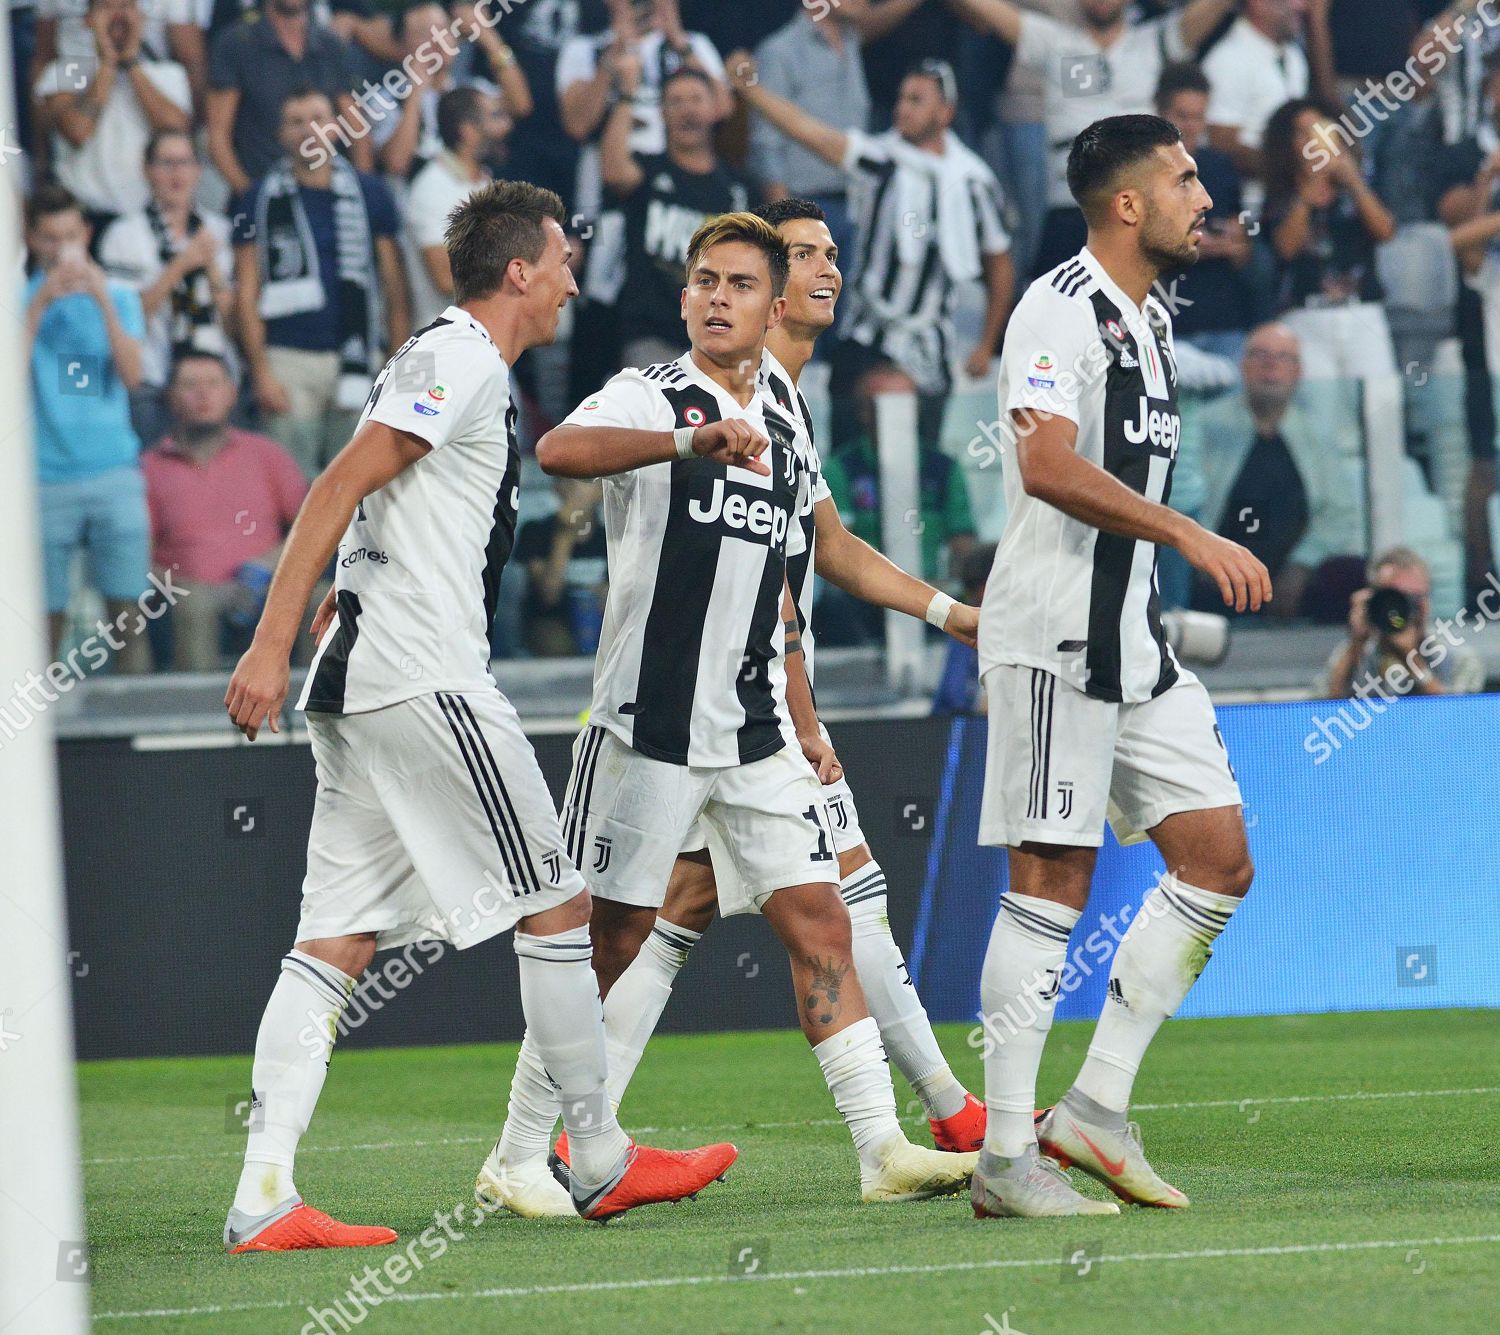 Juventus Mario Mandzukic L Celebrates Teammates After